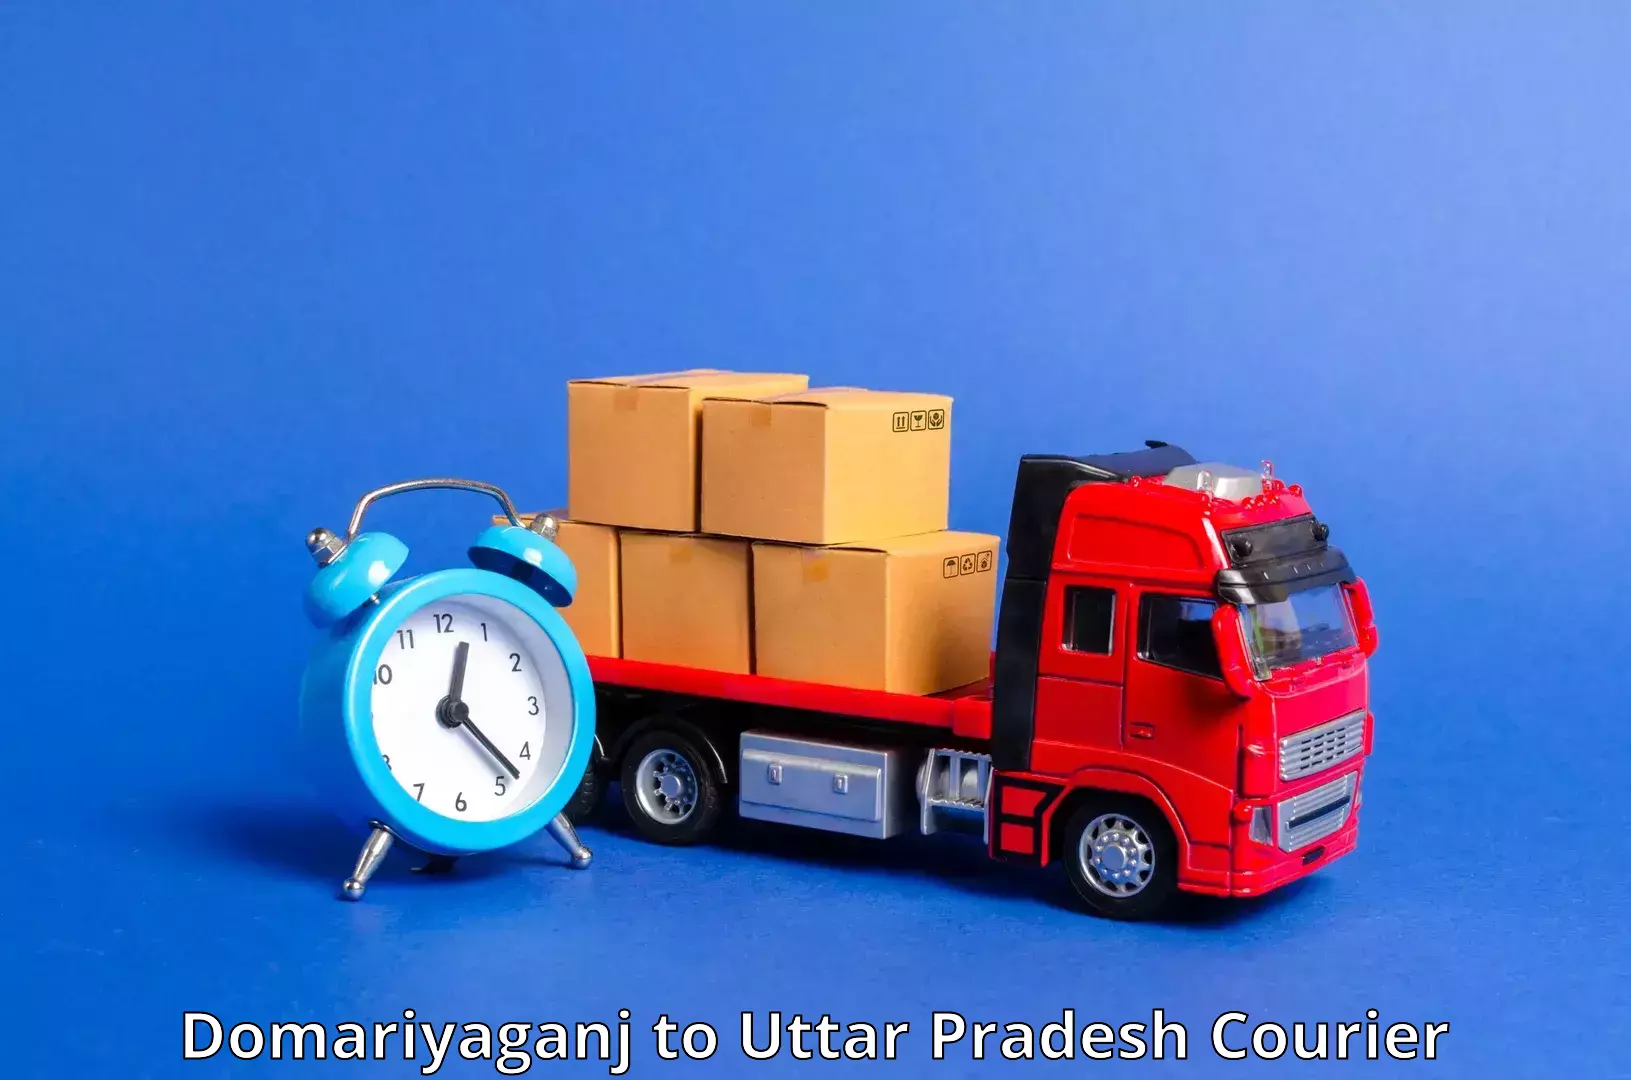 Delivery service partnership Domariyaganj to Khadda